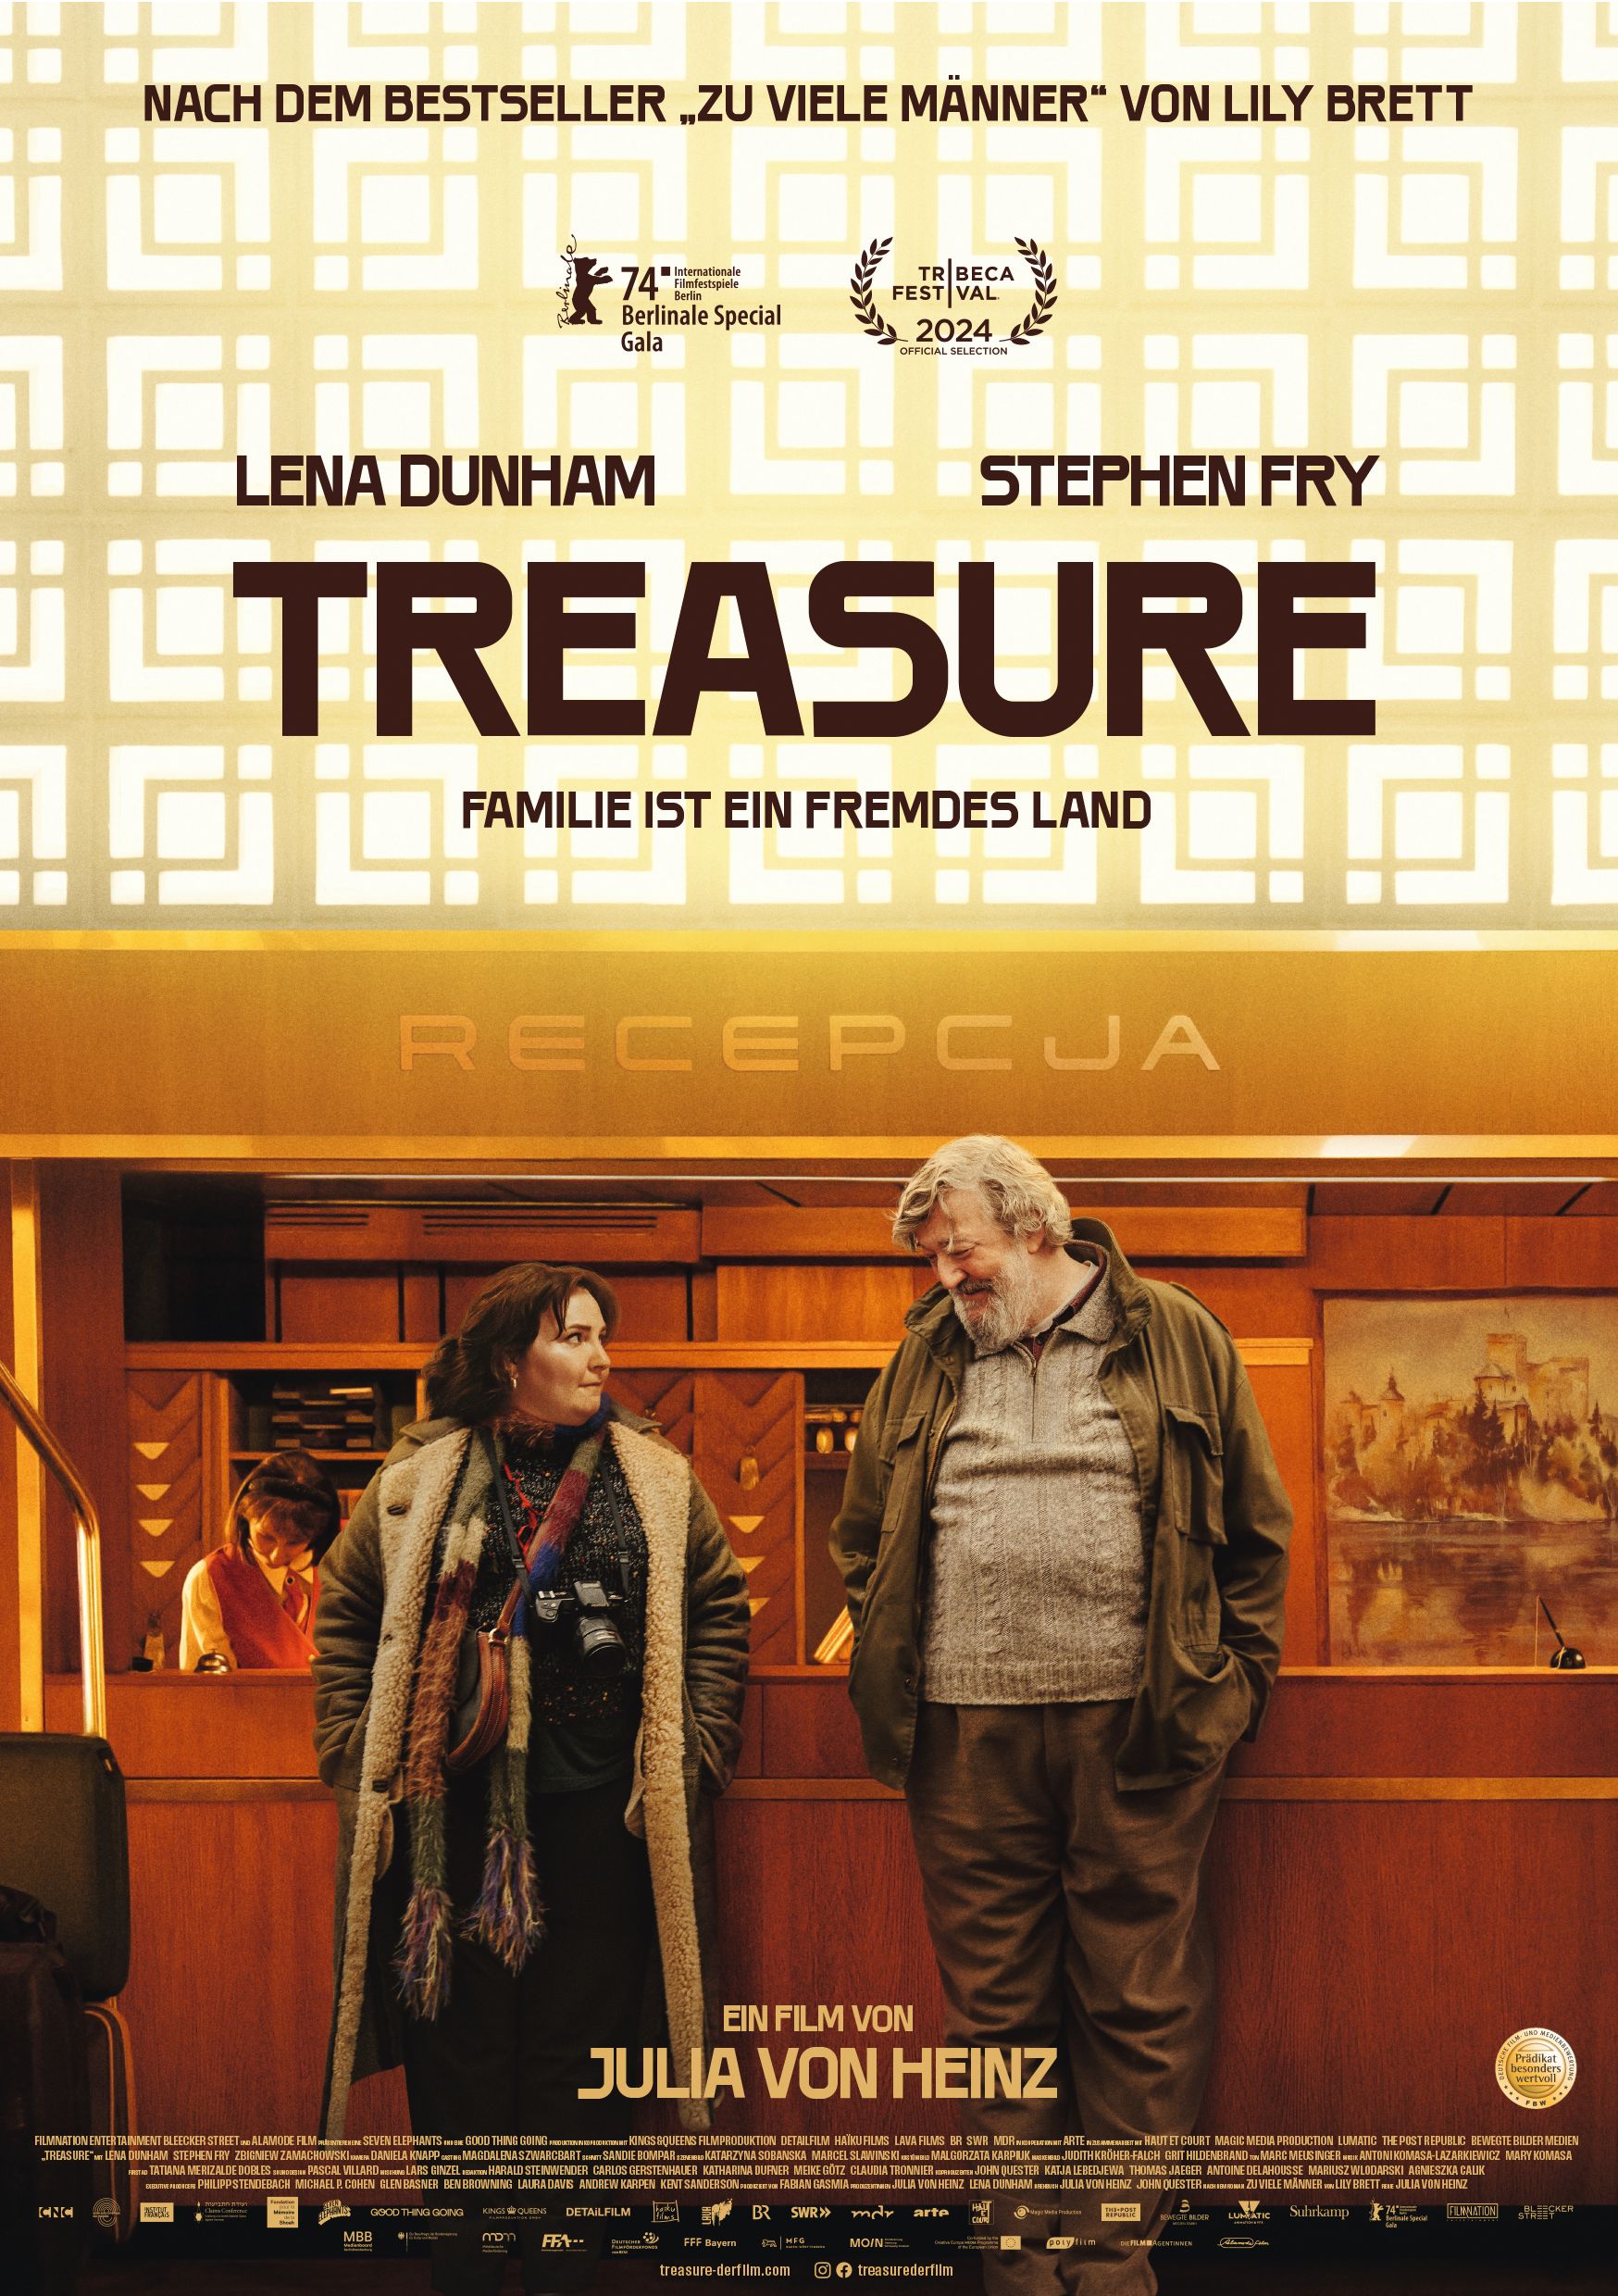 Film poster of Treasure